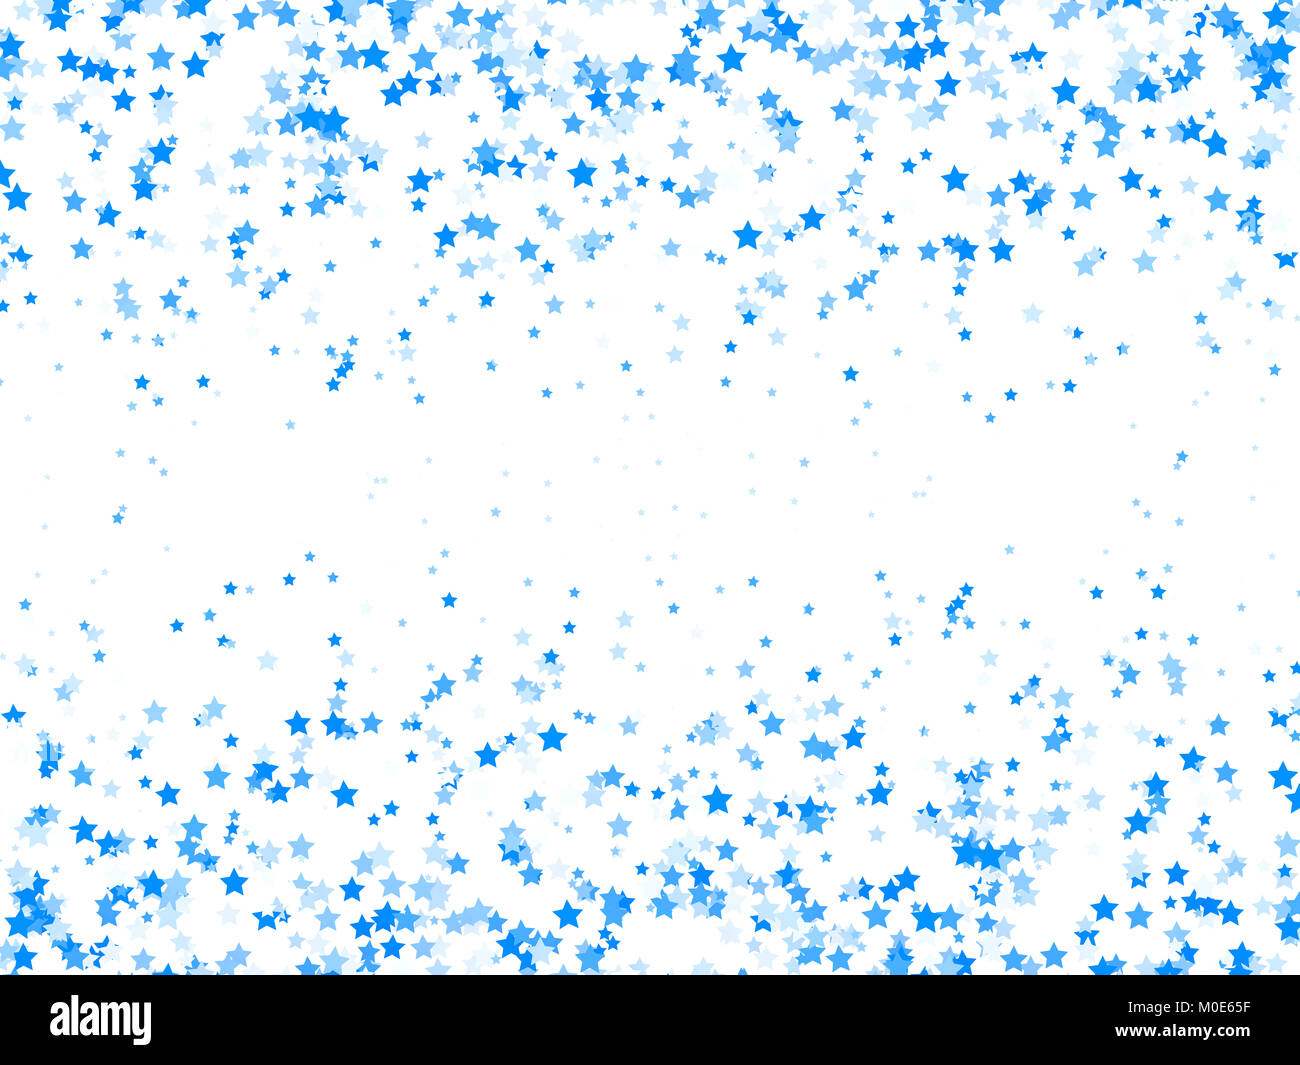 Blaue Sterne auf weißem Hintergrund, ist dies ein gerenderten 3d-Computer generierten Bildes. Auf weiß isoliert. Stockfoto